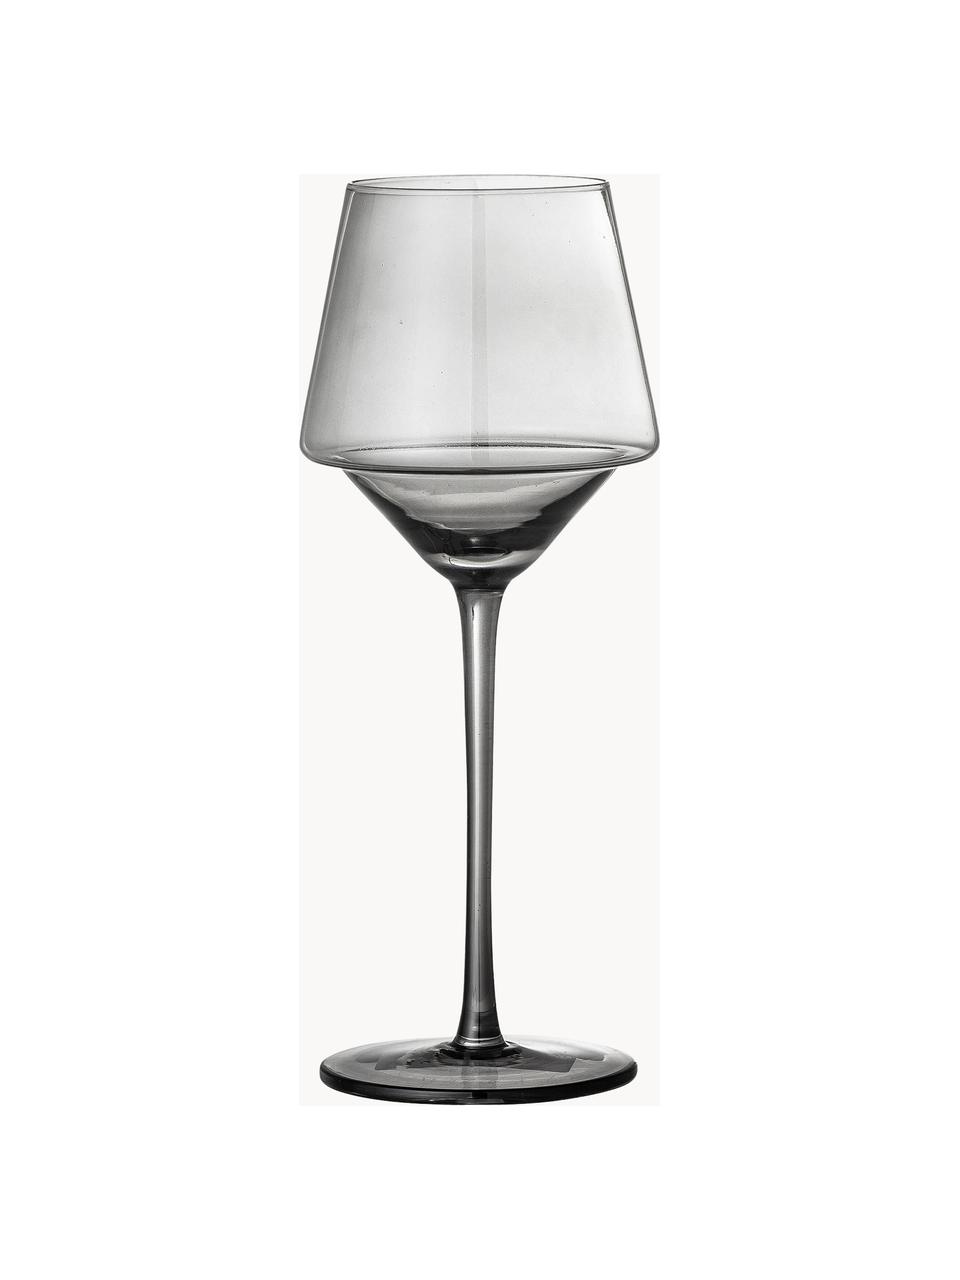 Wijnglazen Yvette, 4 stuks, Glas, Grijs, Ø 9 x H 23 cm, 300 ml